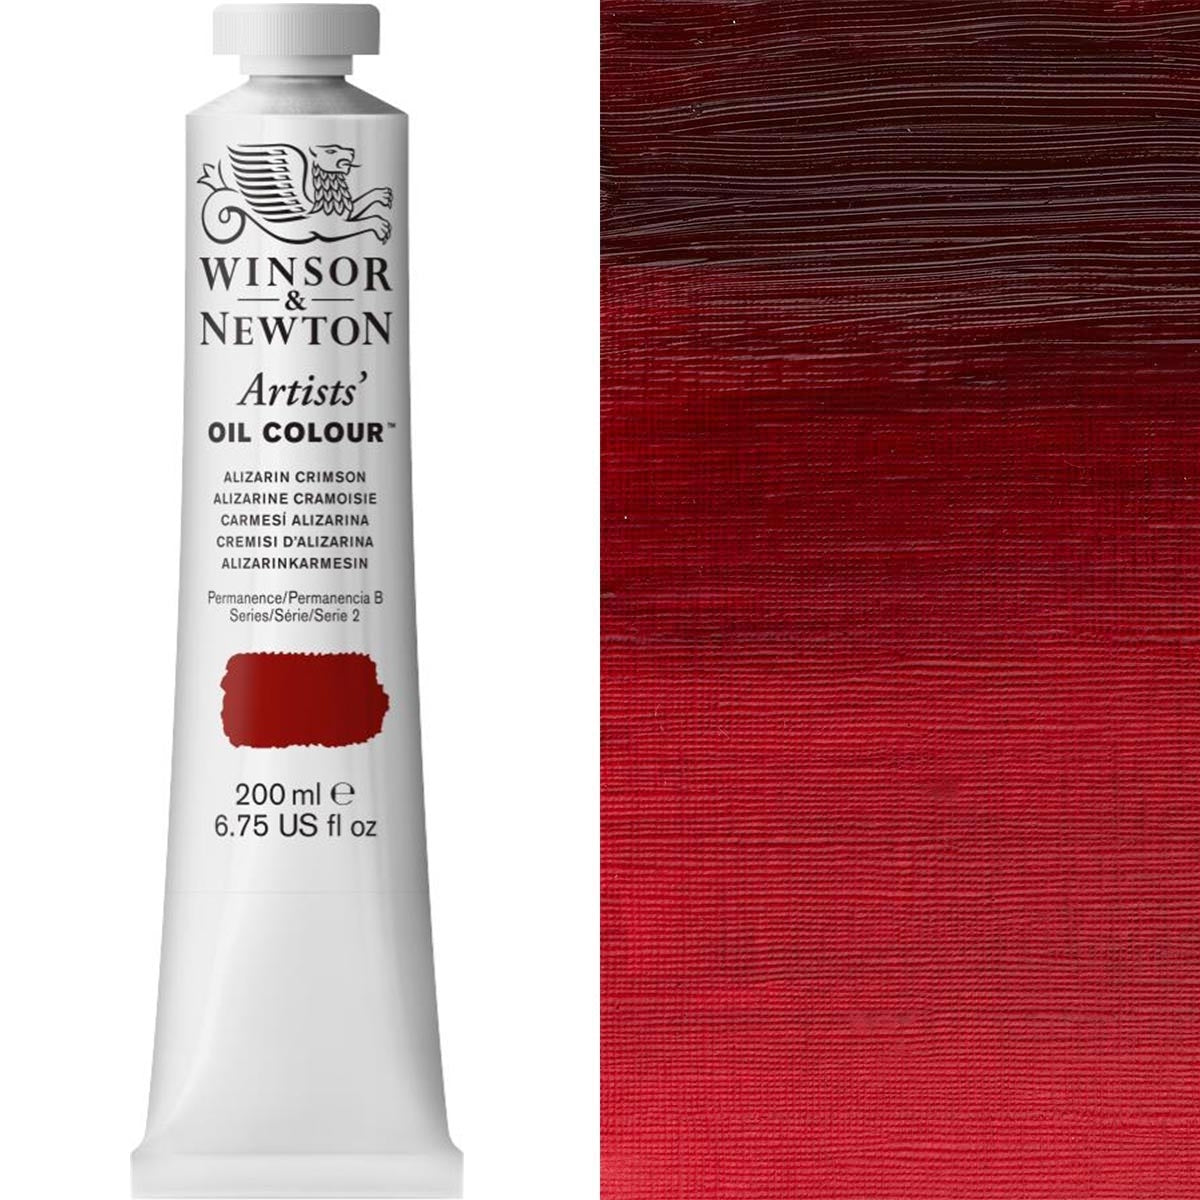 Winsor e Newton - Colore olio degli artisti - 200ml - Alizarin Crimson